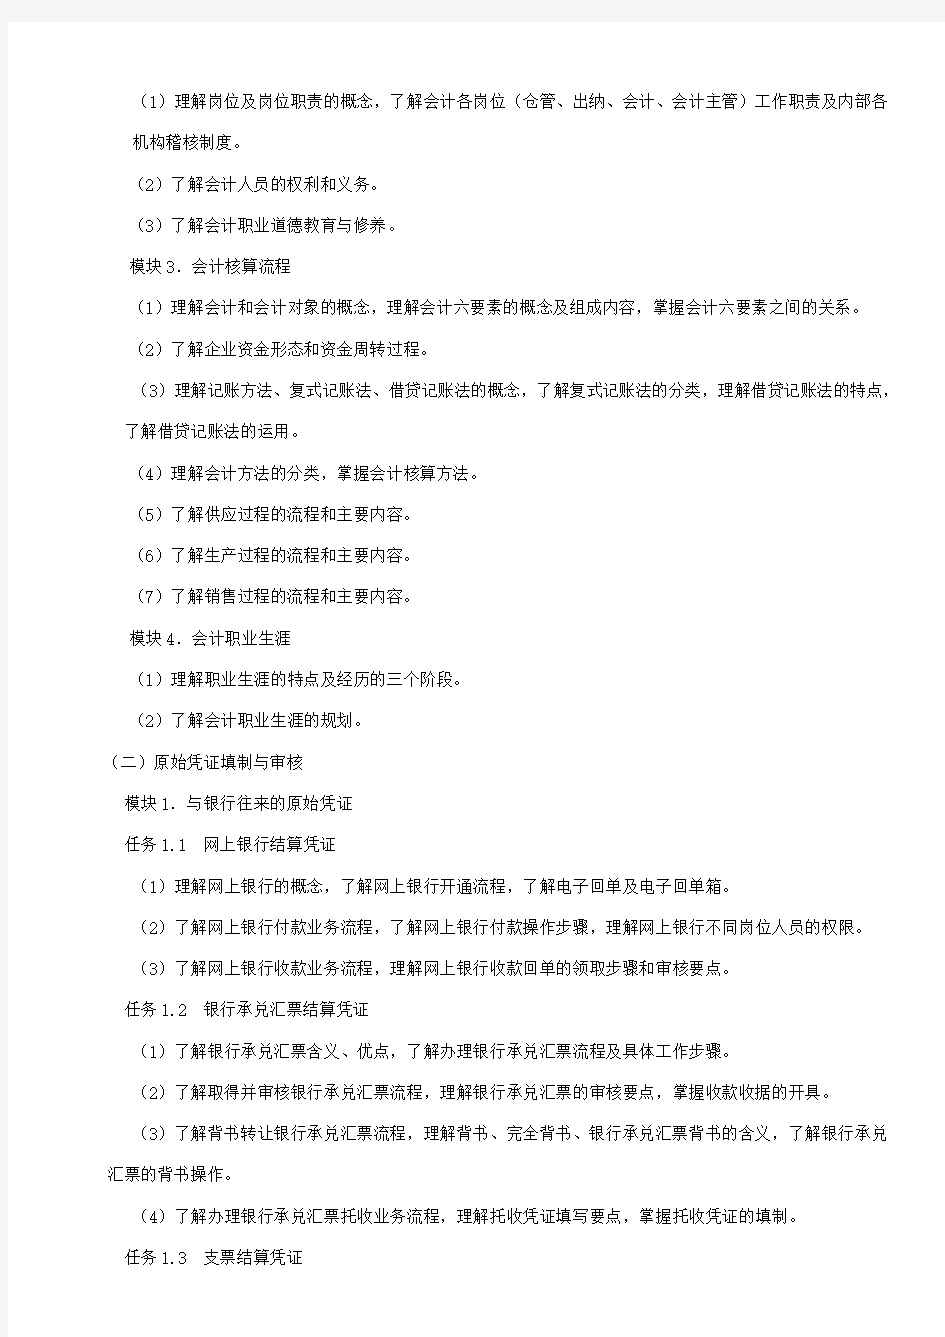 (讨论稿)台州市职业高中《走进会计+原始凭证填制与审核》会考考纲